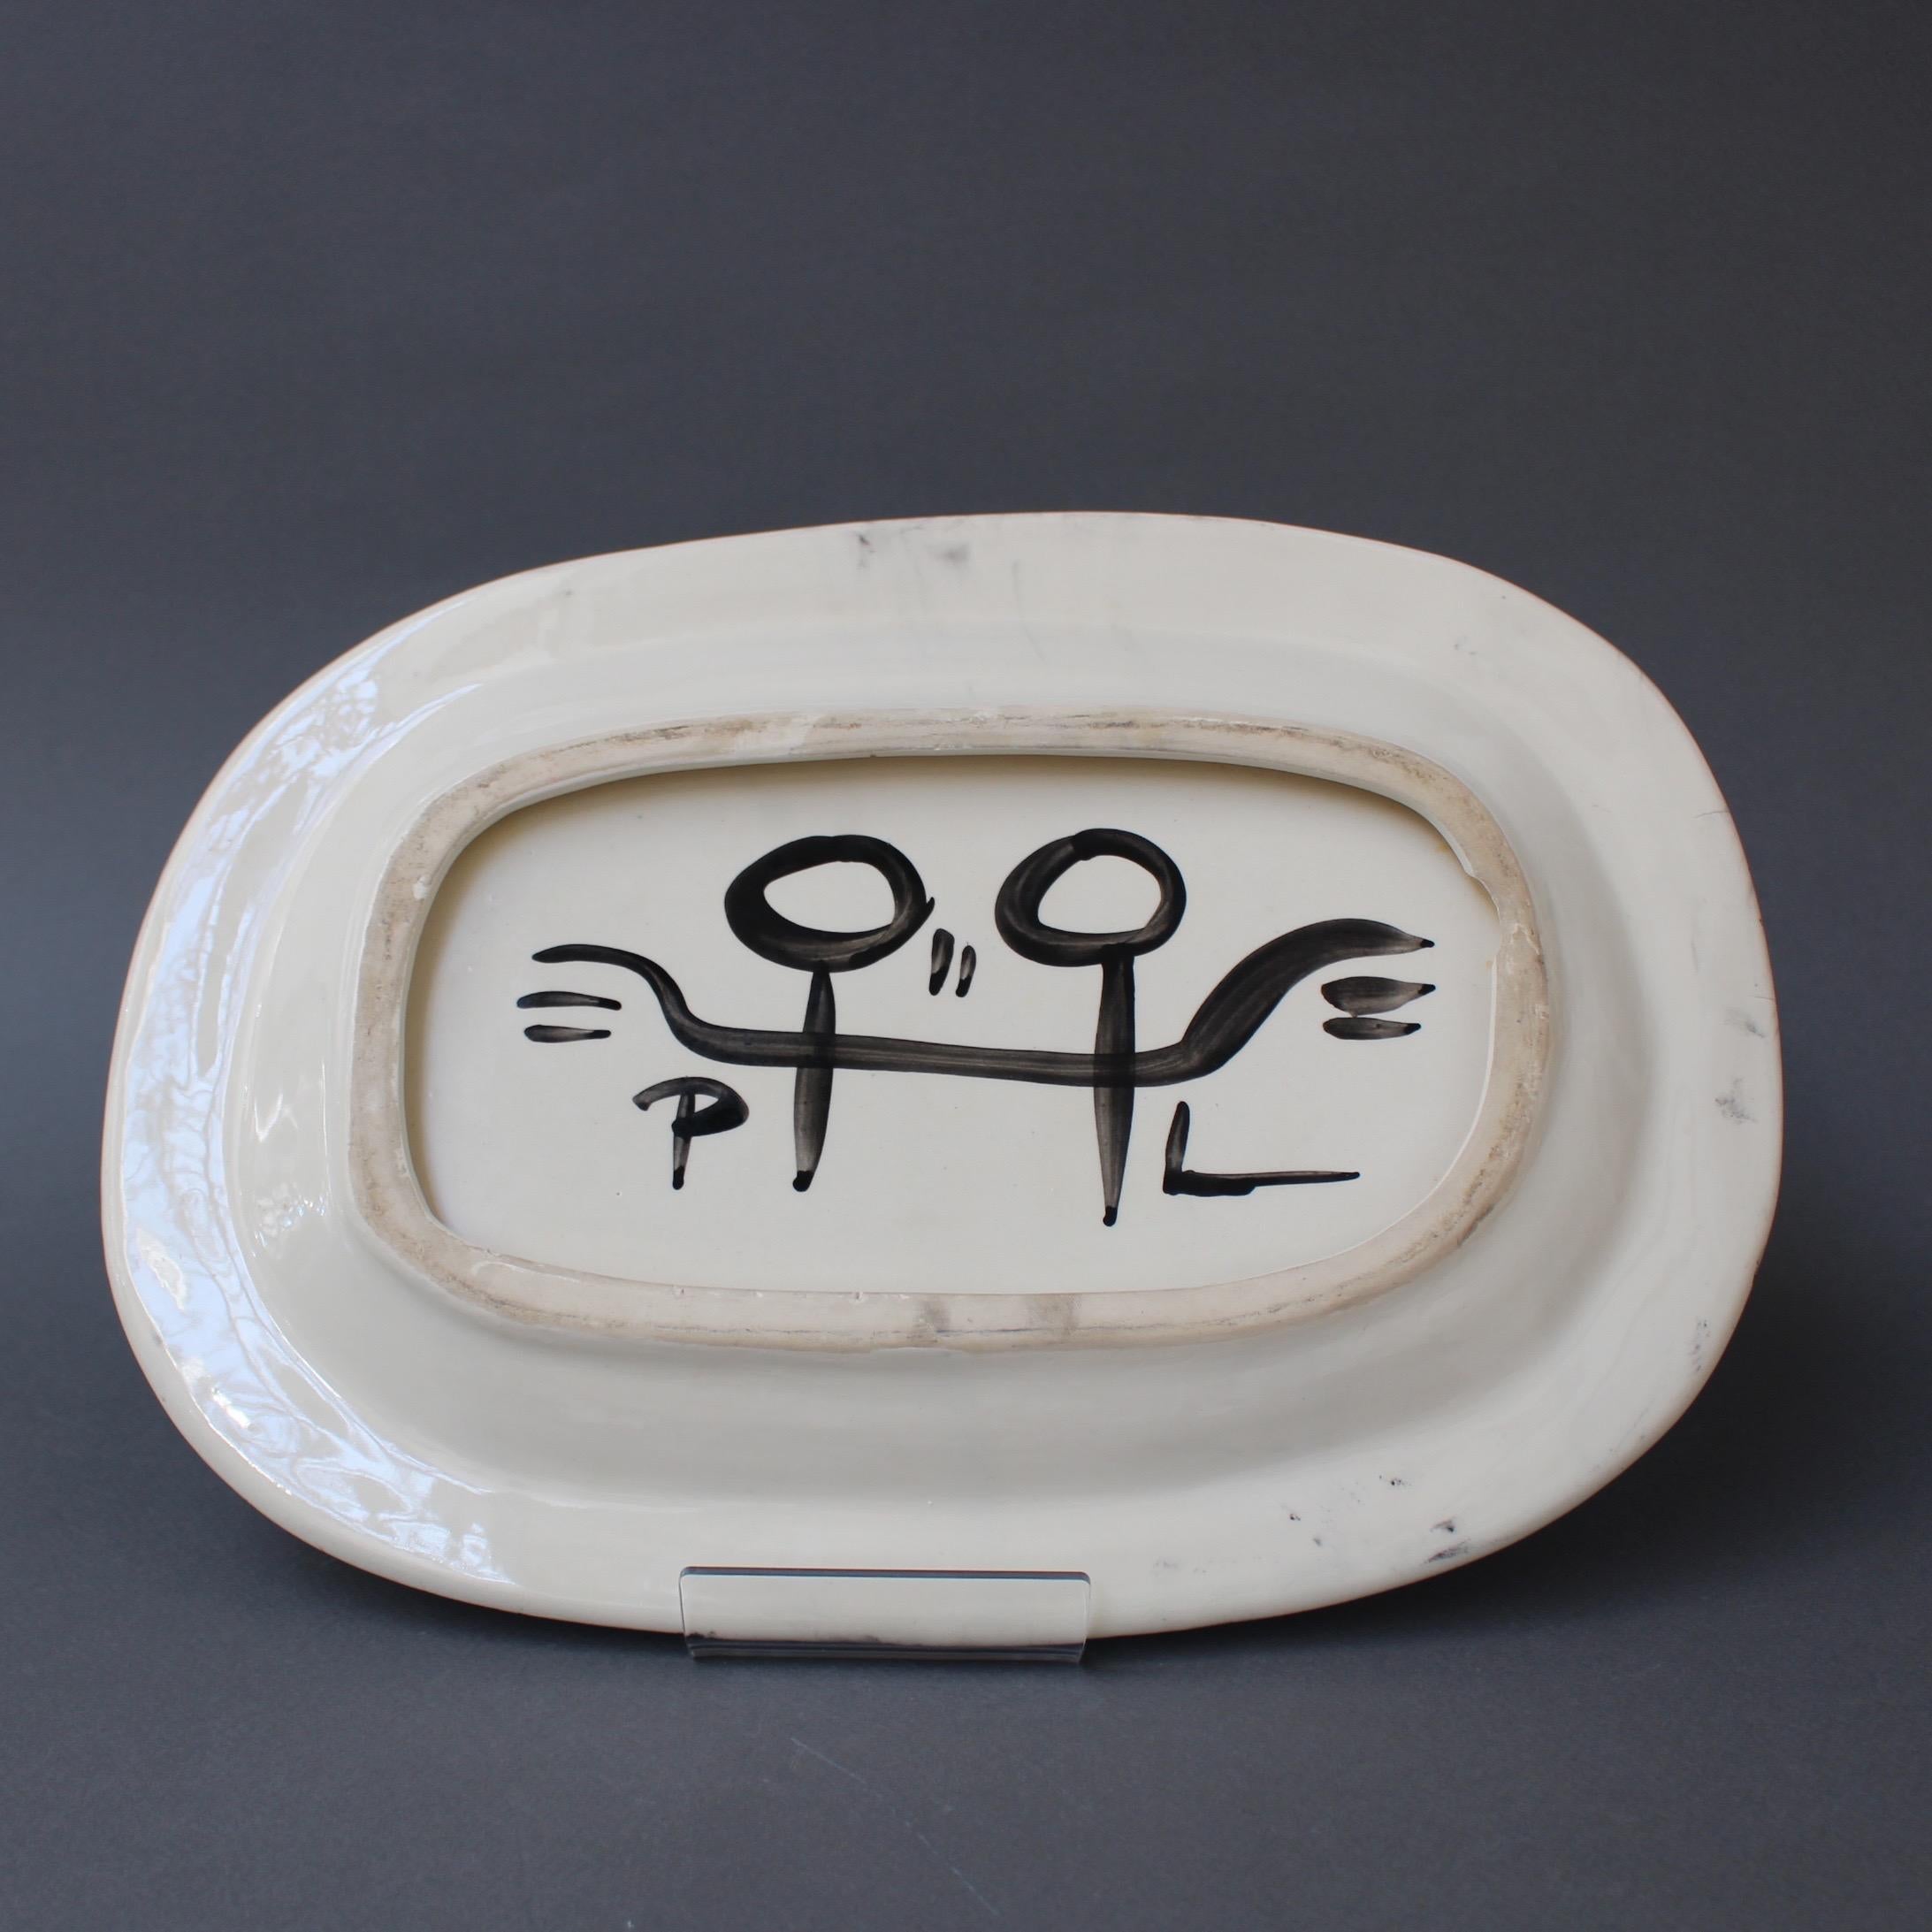 Ceramic Decorative Platter with Bird Motif by Jacques Pouchain - Poët-Laval 2